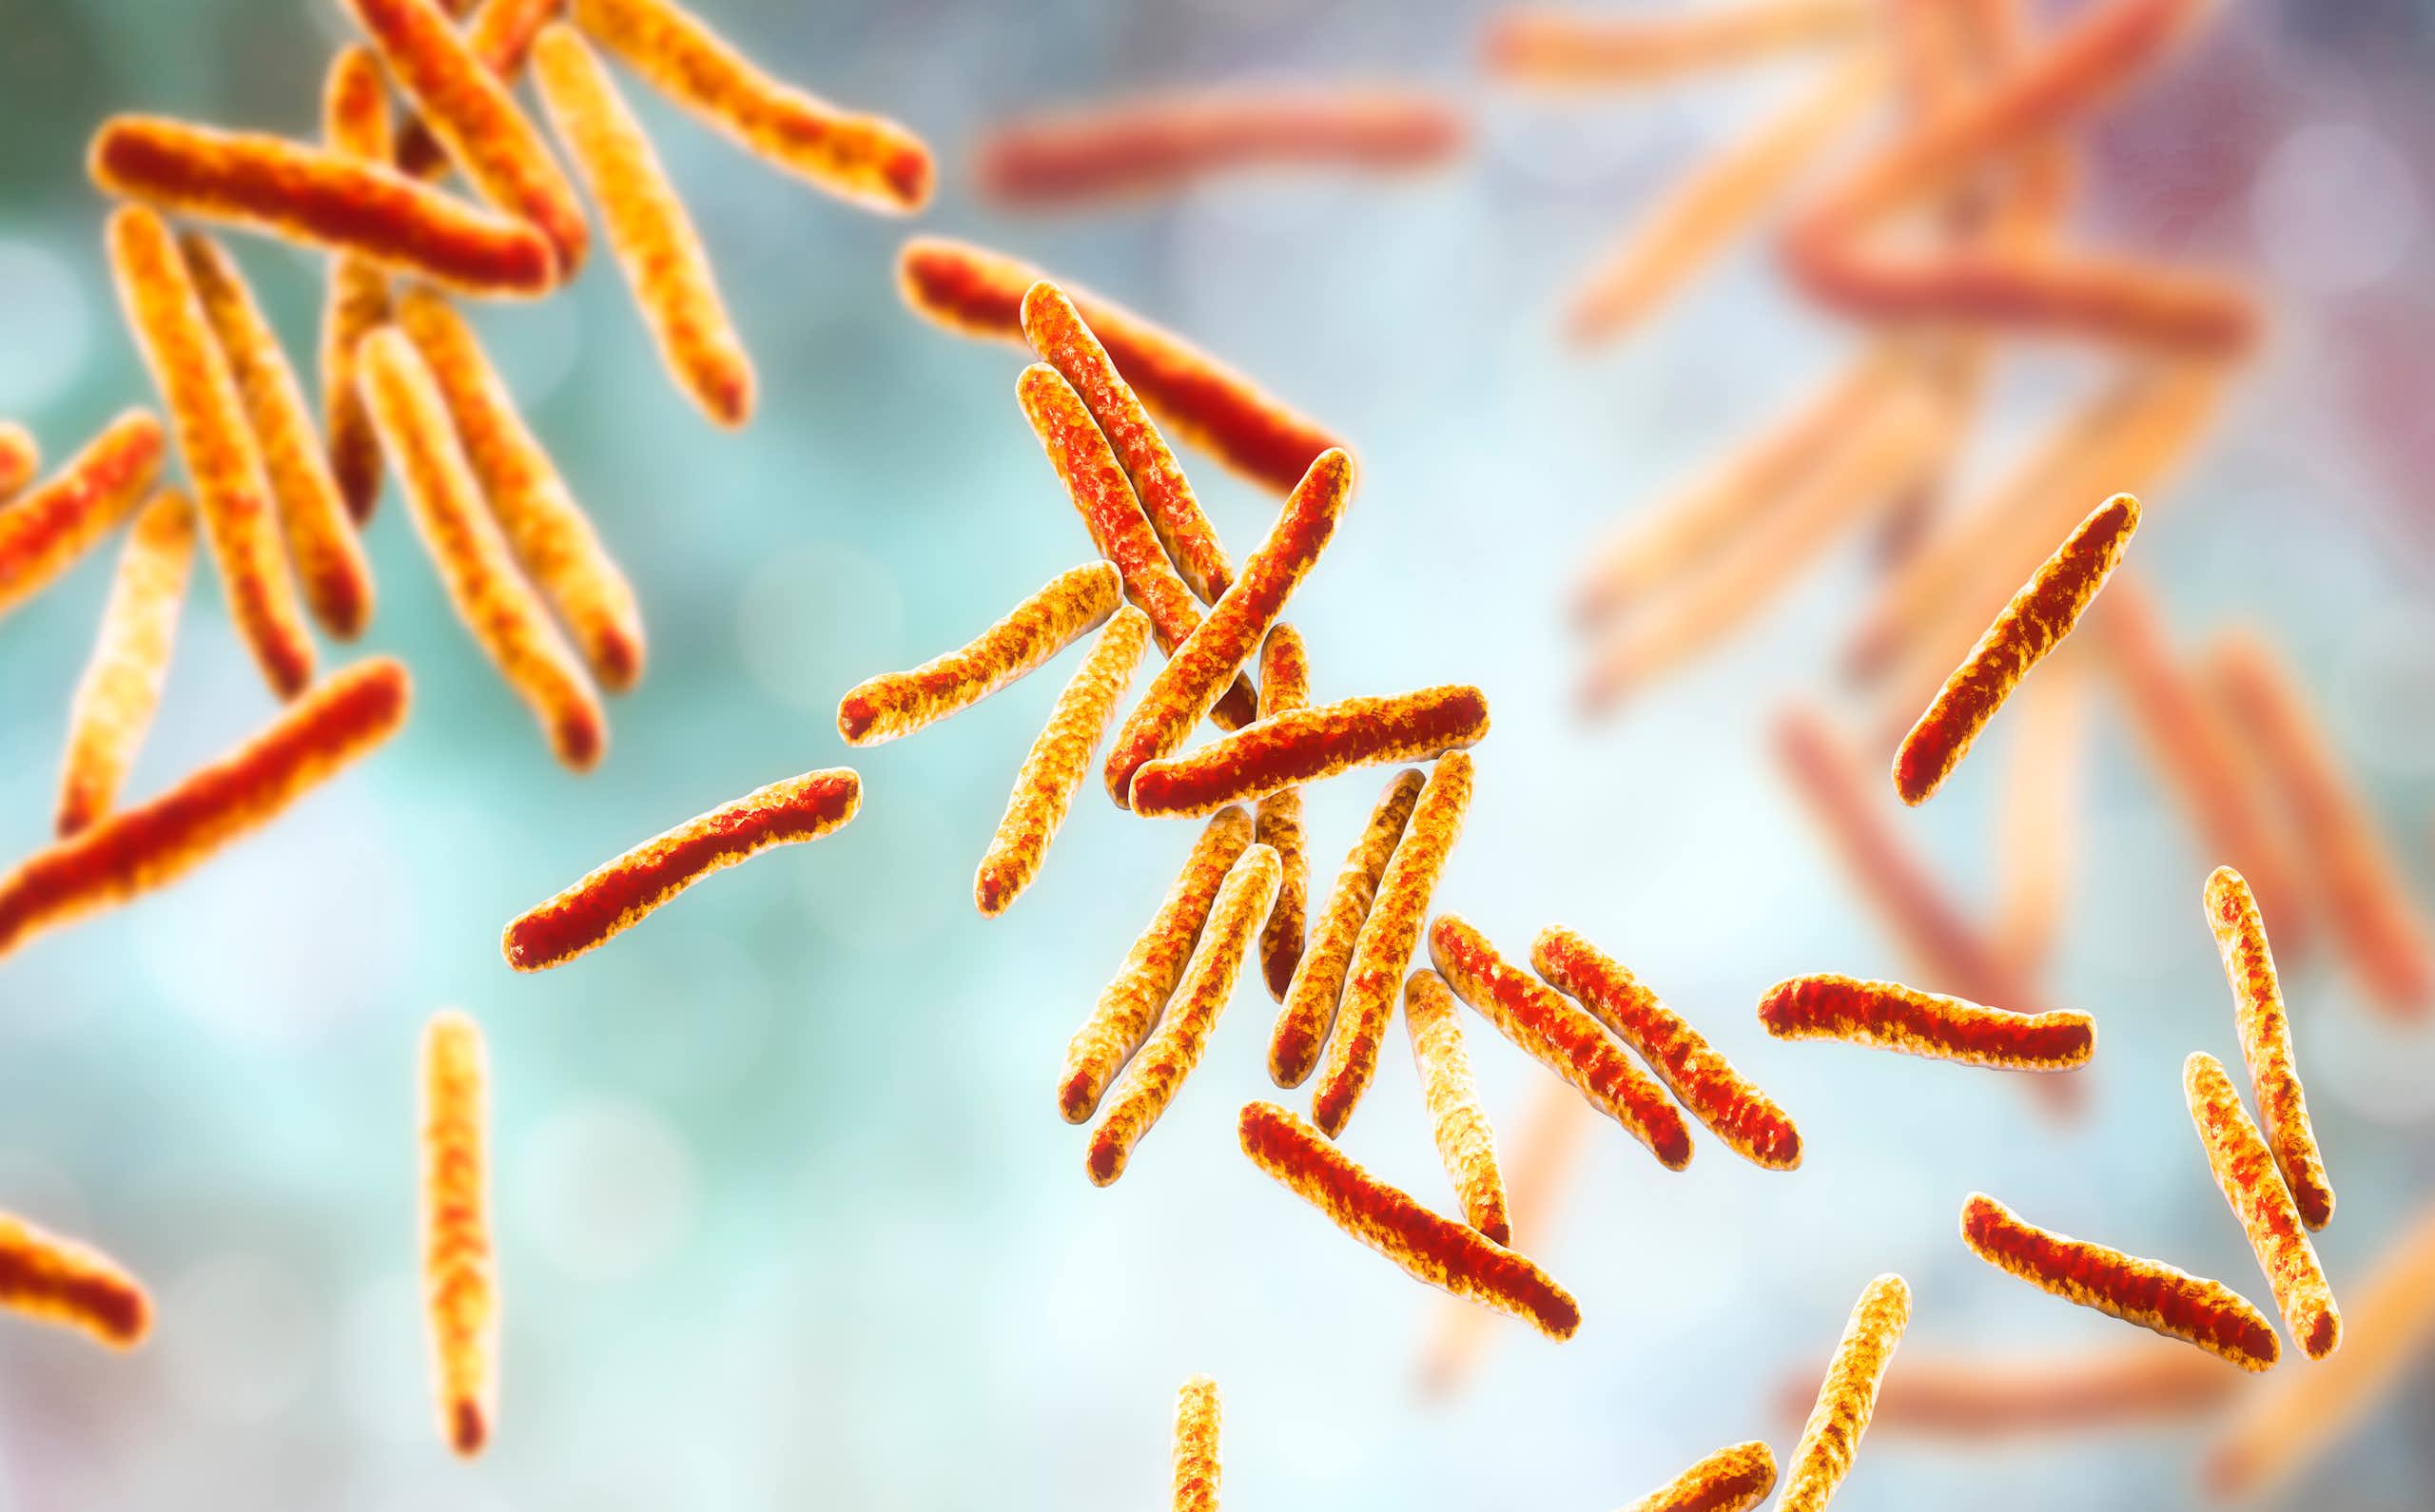 La bacteria de la tuberculosis “roba” la vitamina B12 a los humanos, y saberlo puede mejorar los tratamientos